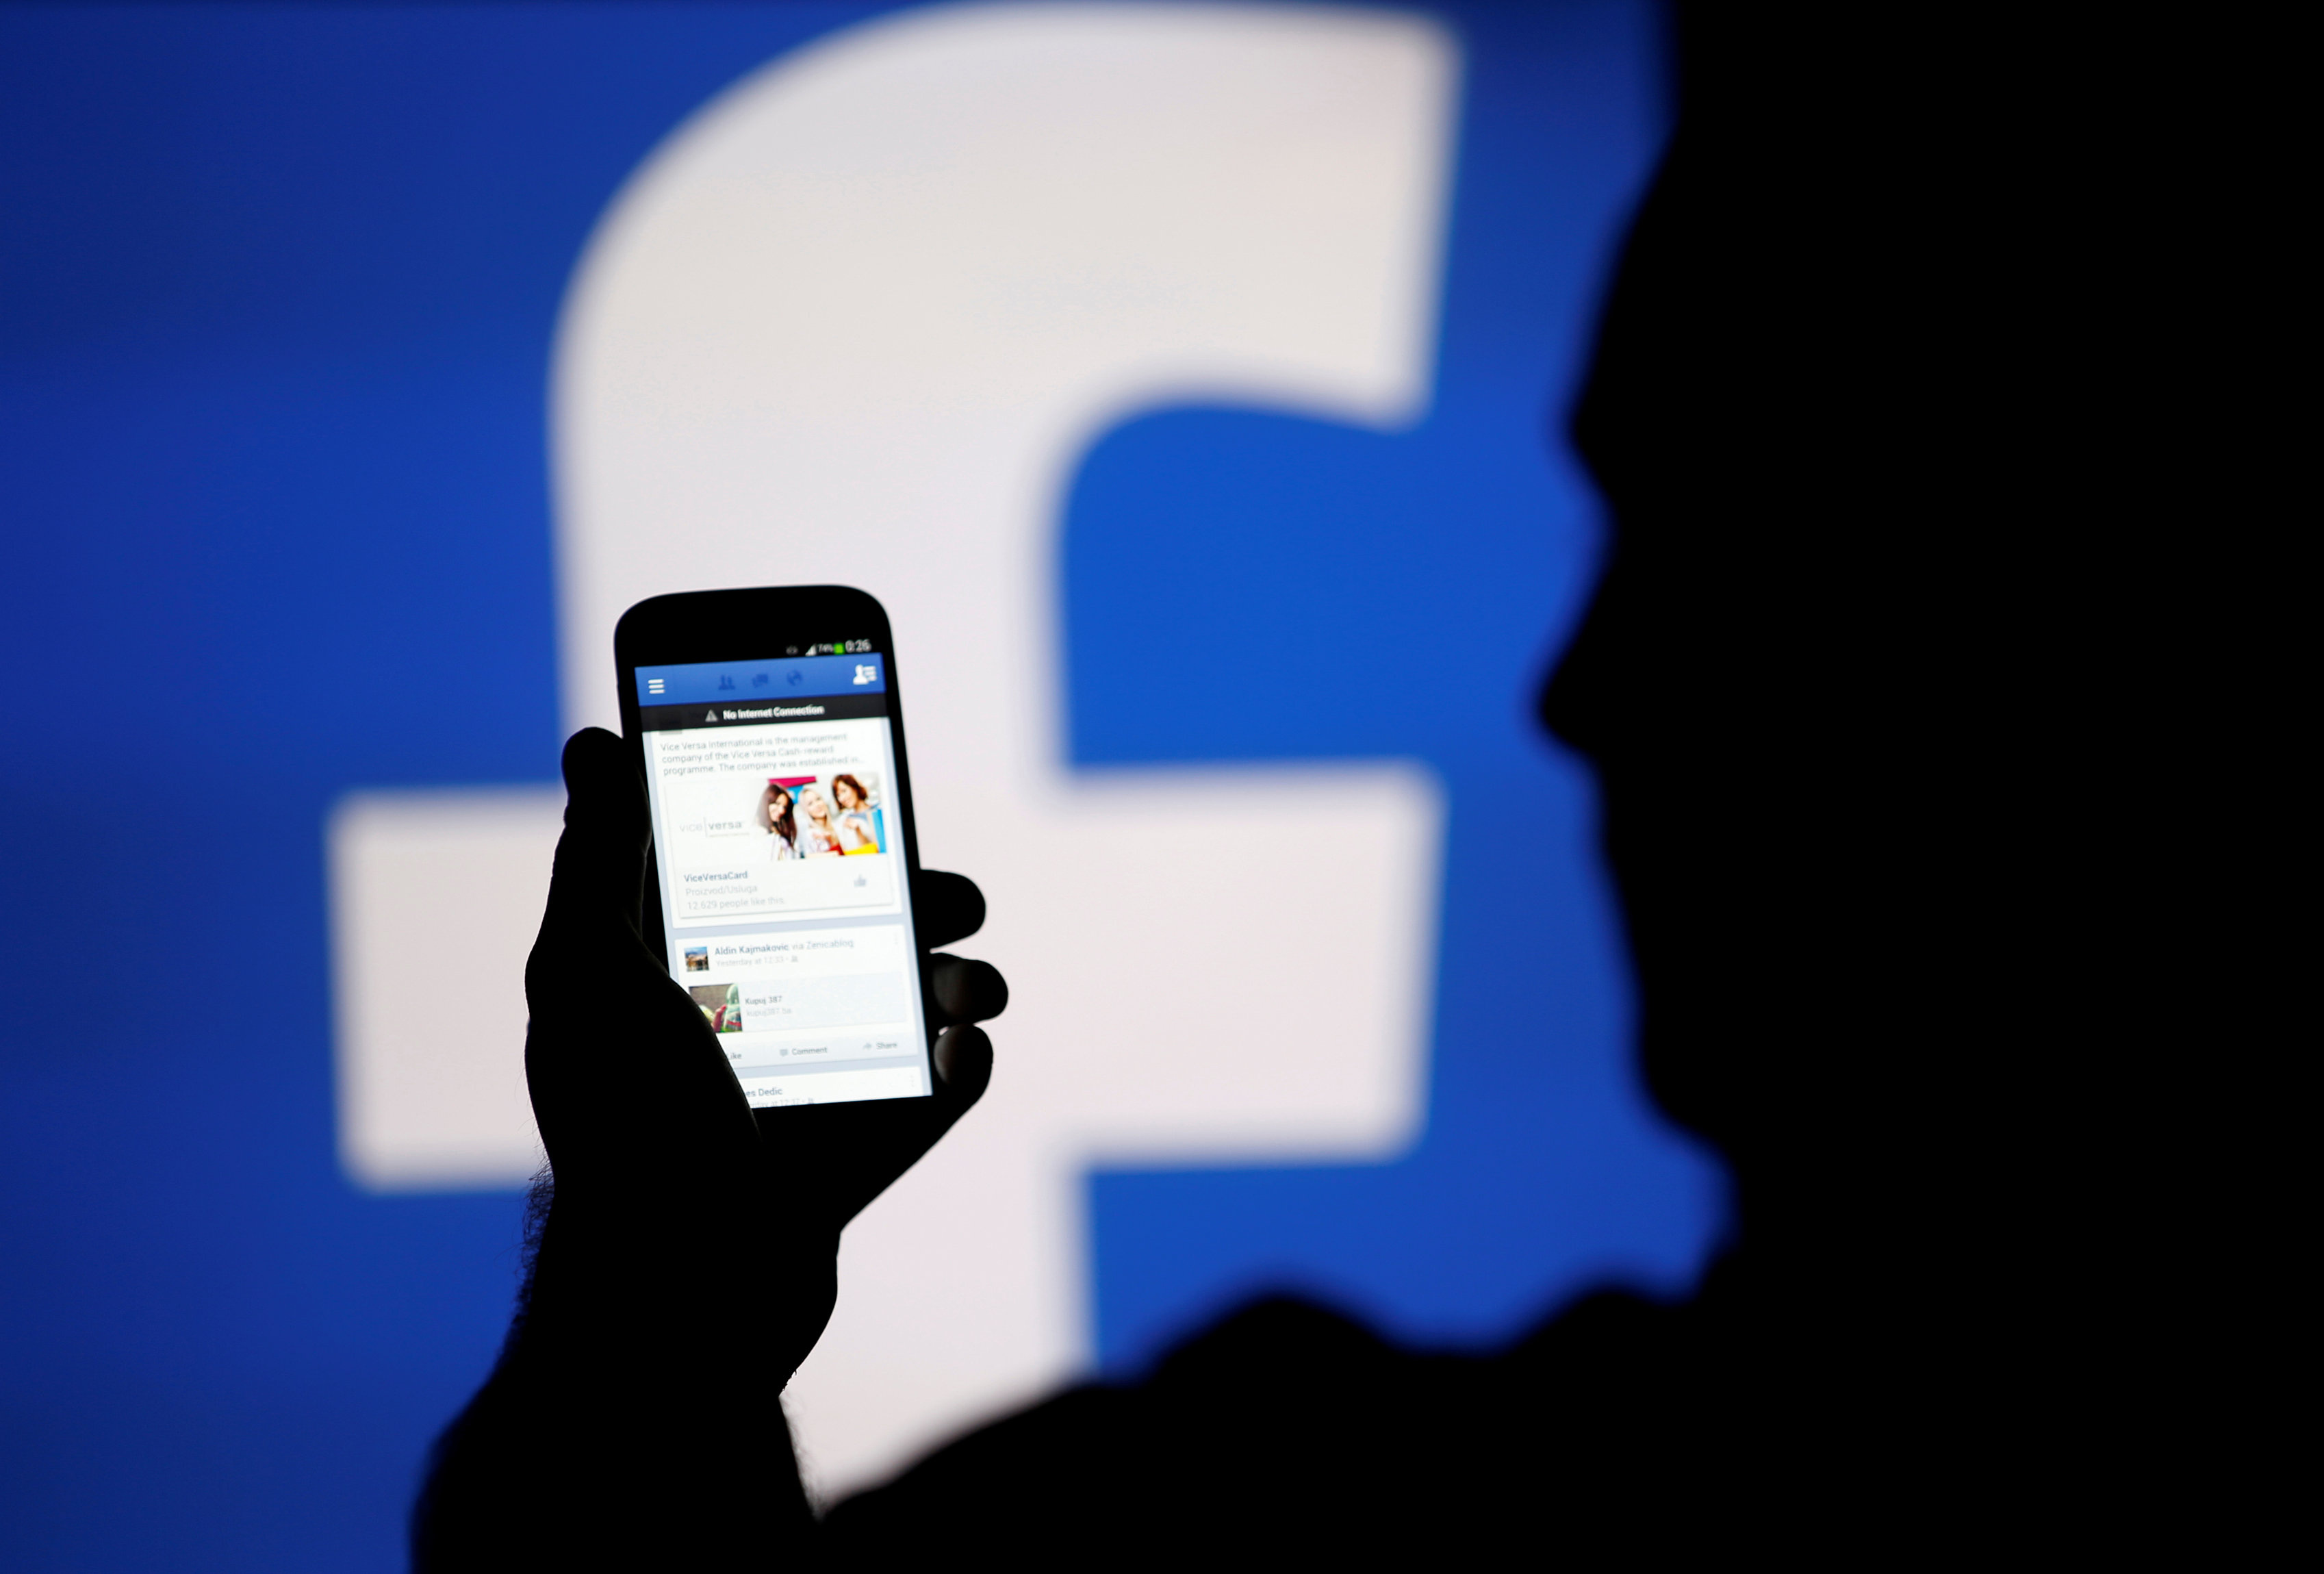 Waspada, Beredar Gambar Porno di Facebook untuk Curi Password